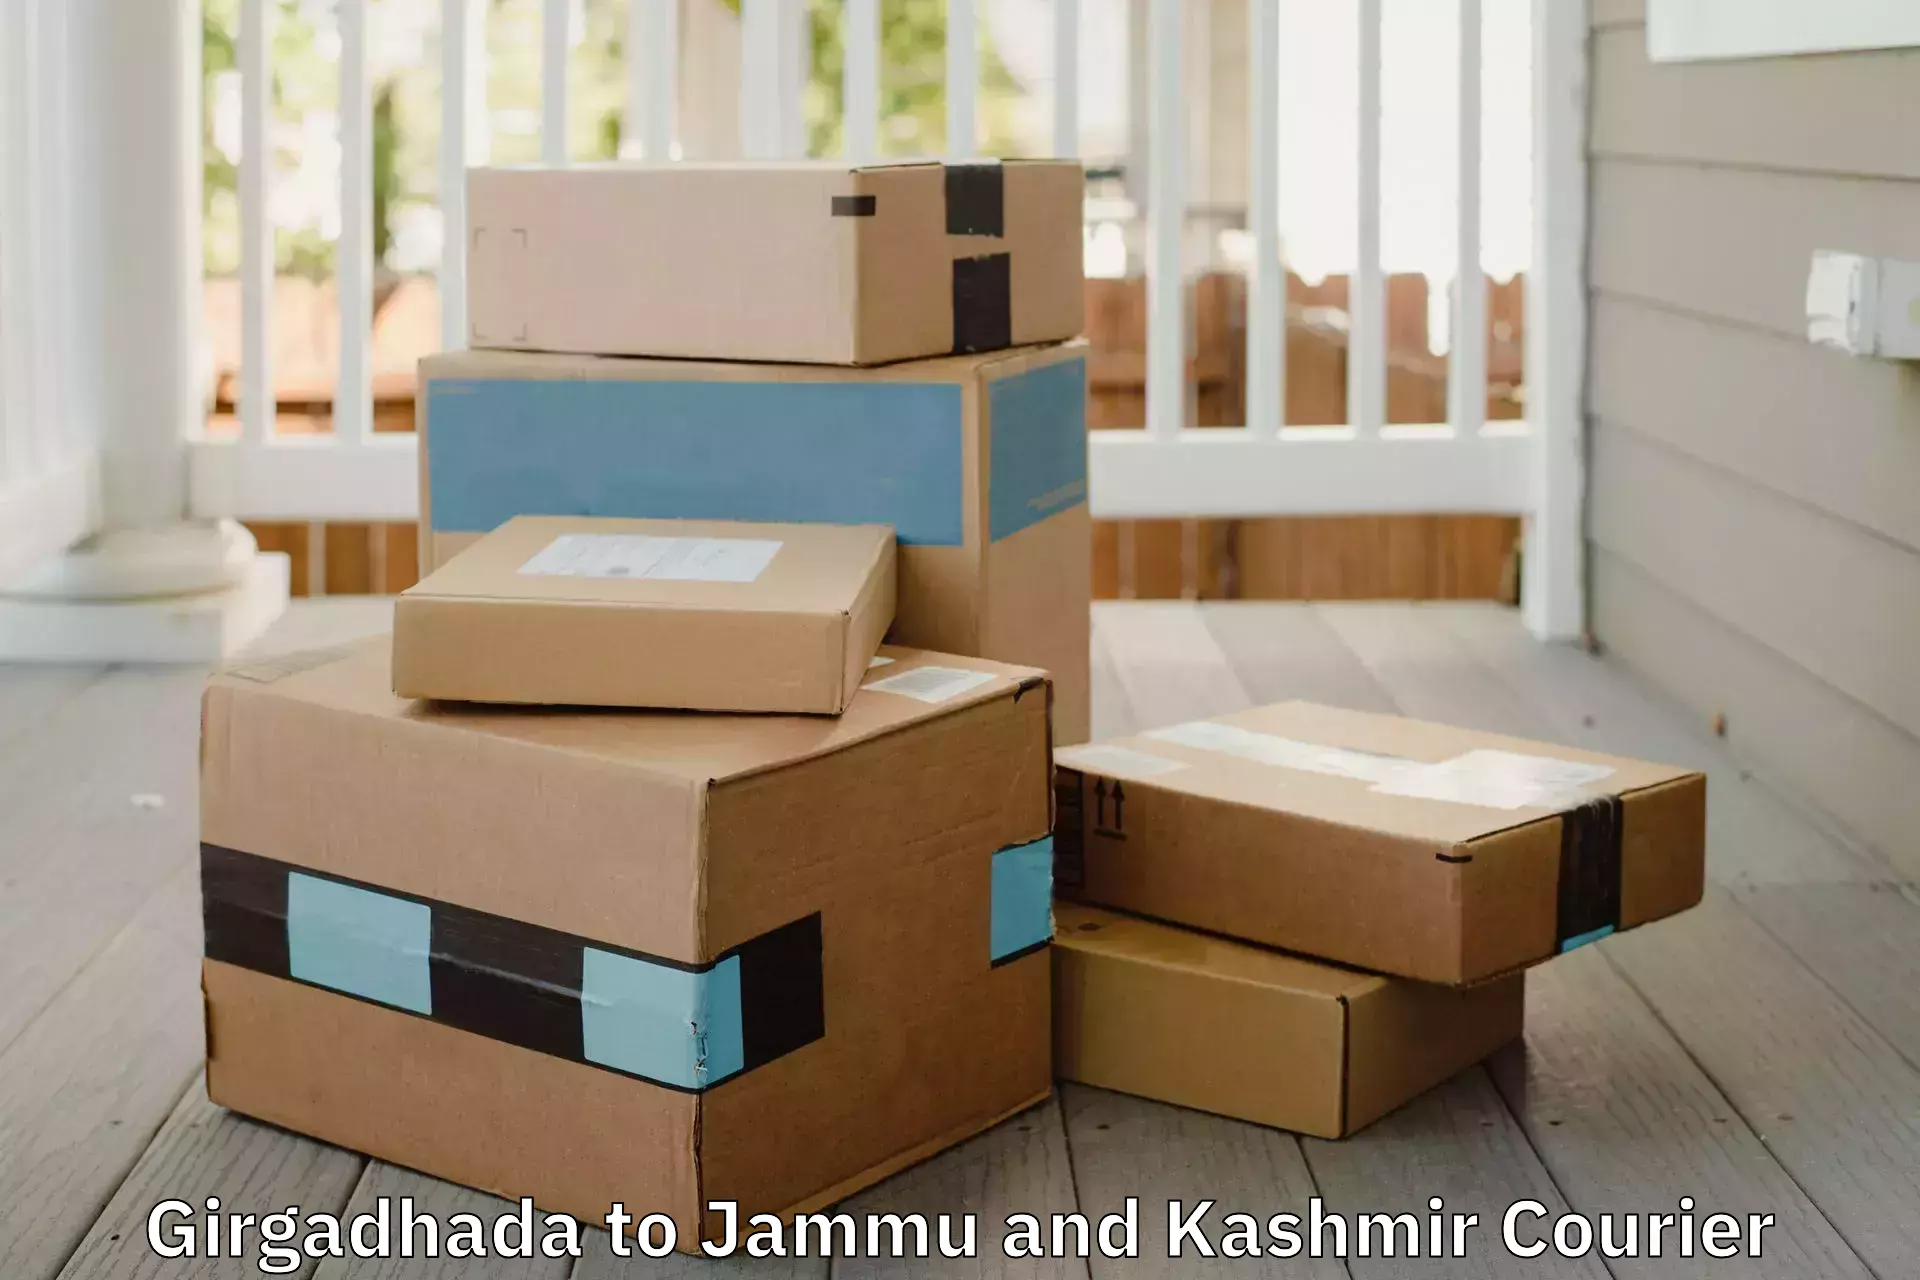 Furniture transport and logistics Girgadhada to Katra